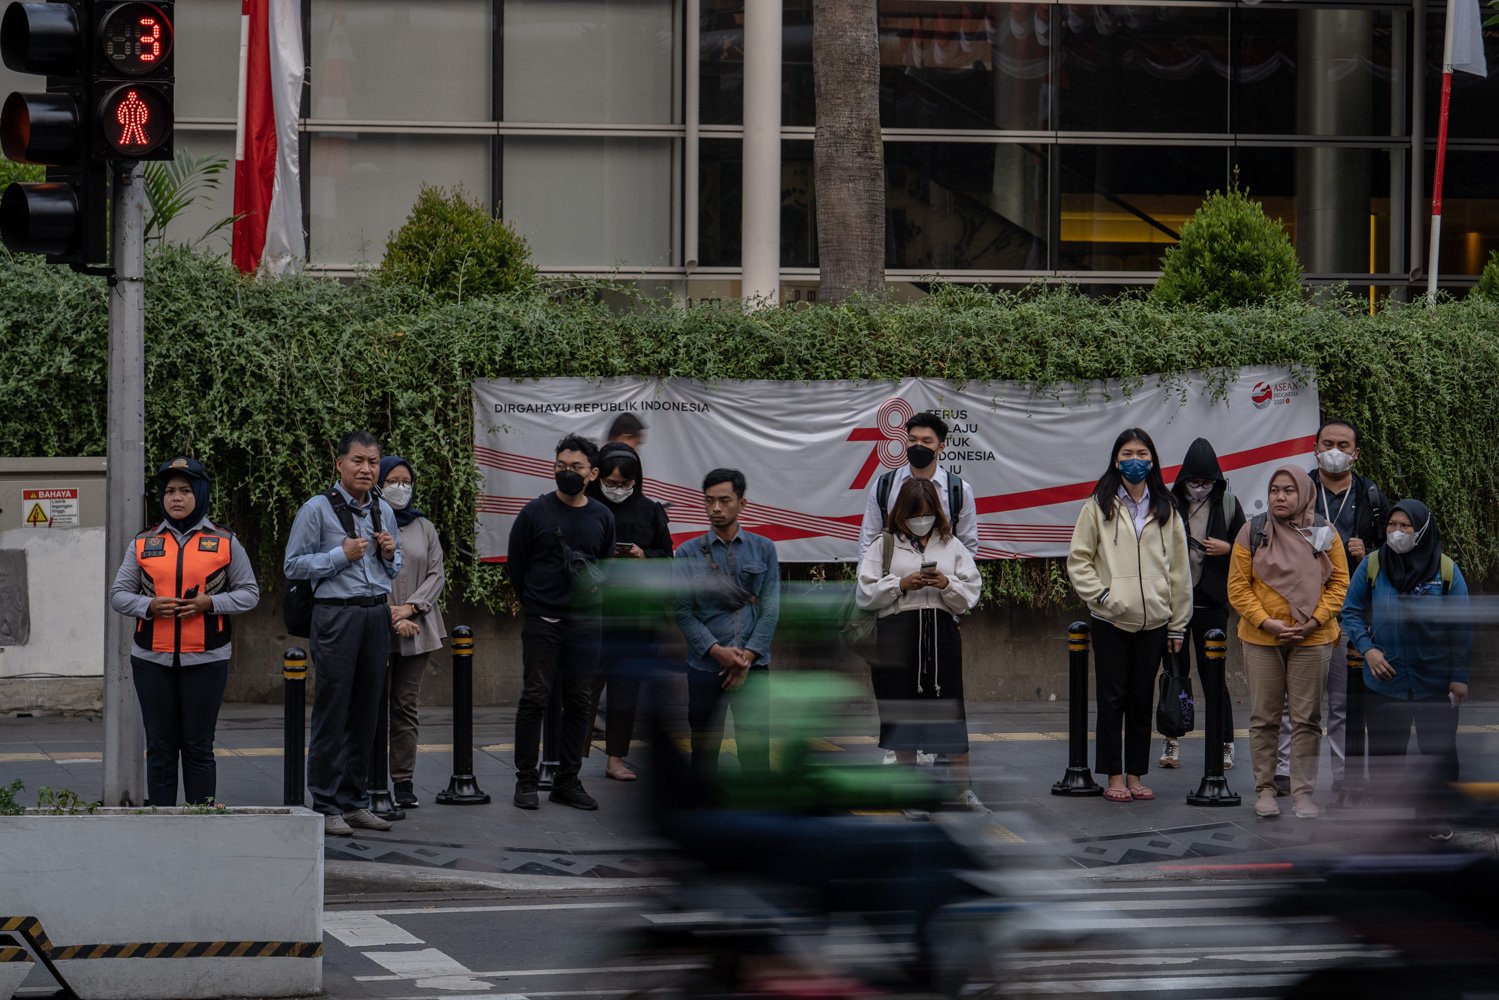 Warga beraktivitas di luar ruangan di sekitar Jalan MH Thamrin, Jakarta Pusat, Senin (14/8). Sebagian besar warga terlihat mengenakan masker. Seminggu terakhir ini polusi udara di Jabodetabek menjadi sorotan masyarakat. Kualitas udara di Jakarta masuk kategori tidak sehat.